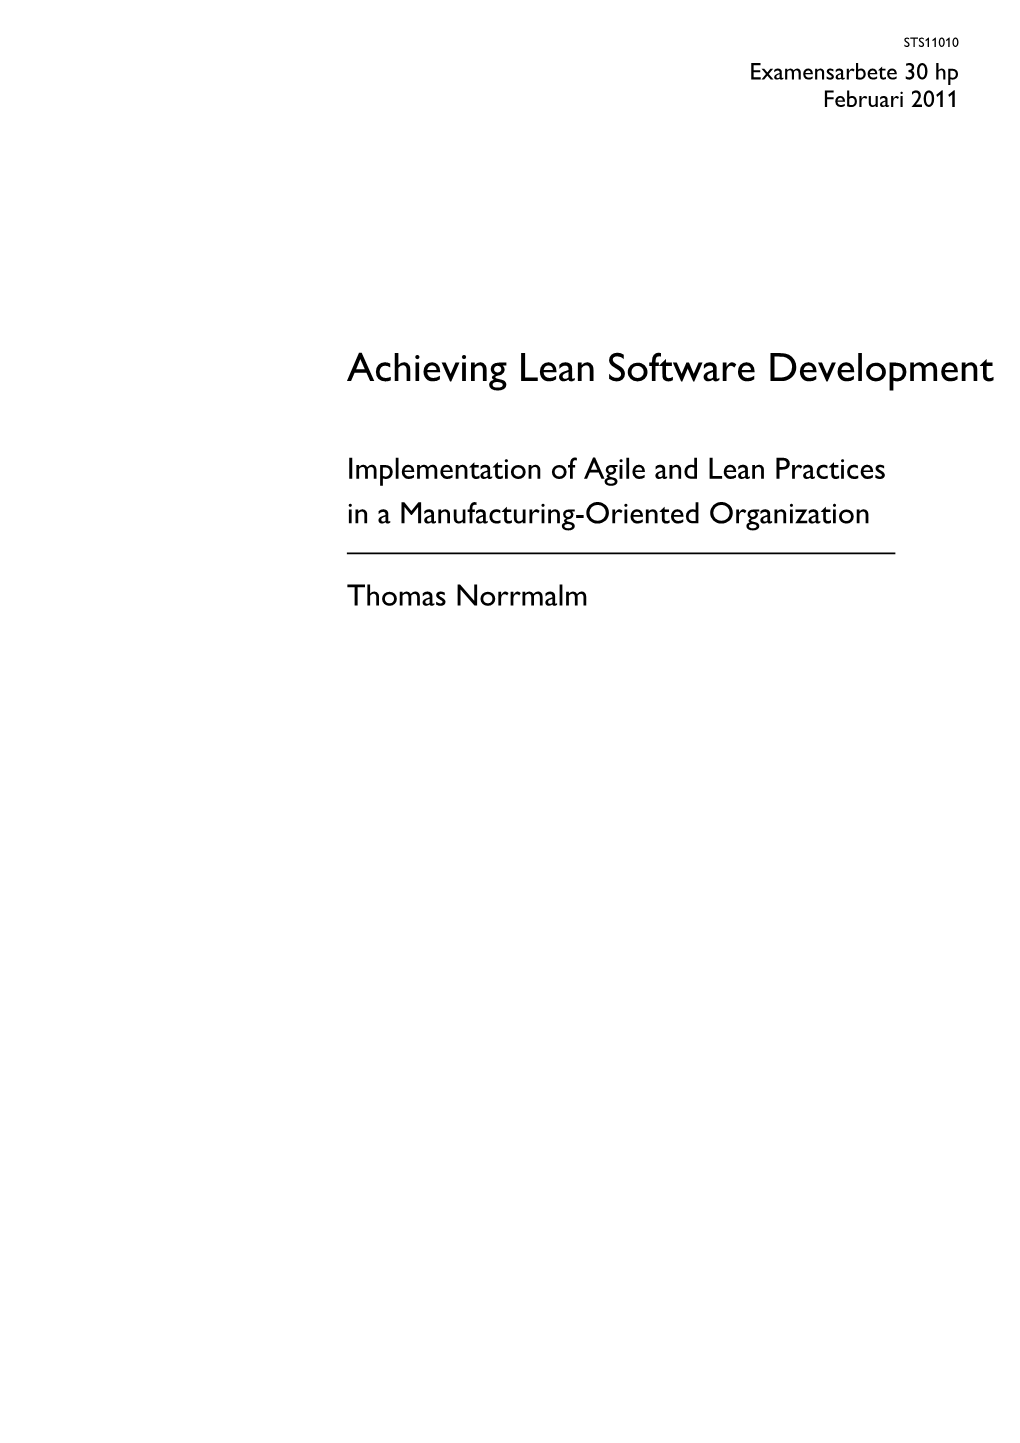 Achieving Lean Software Development